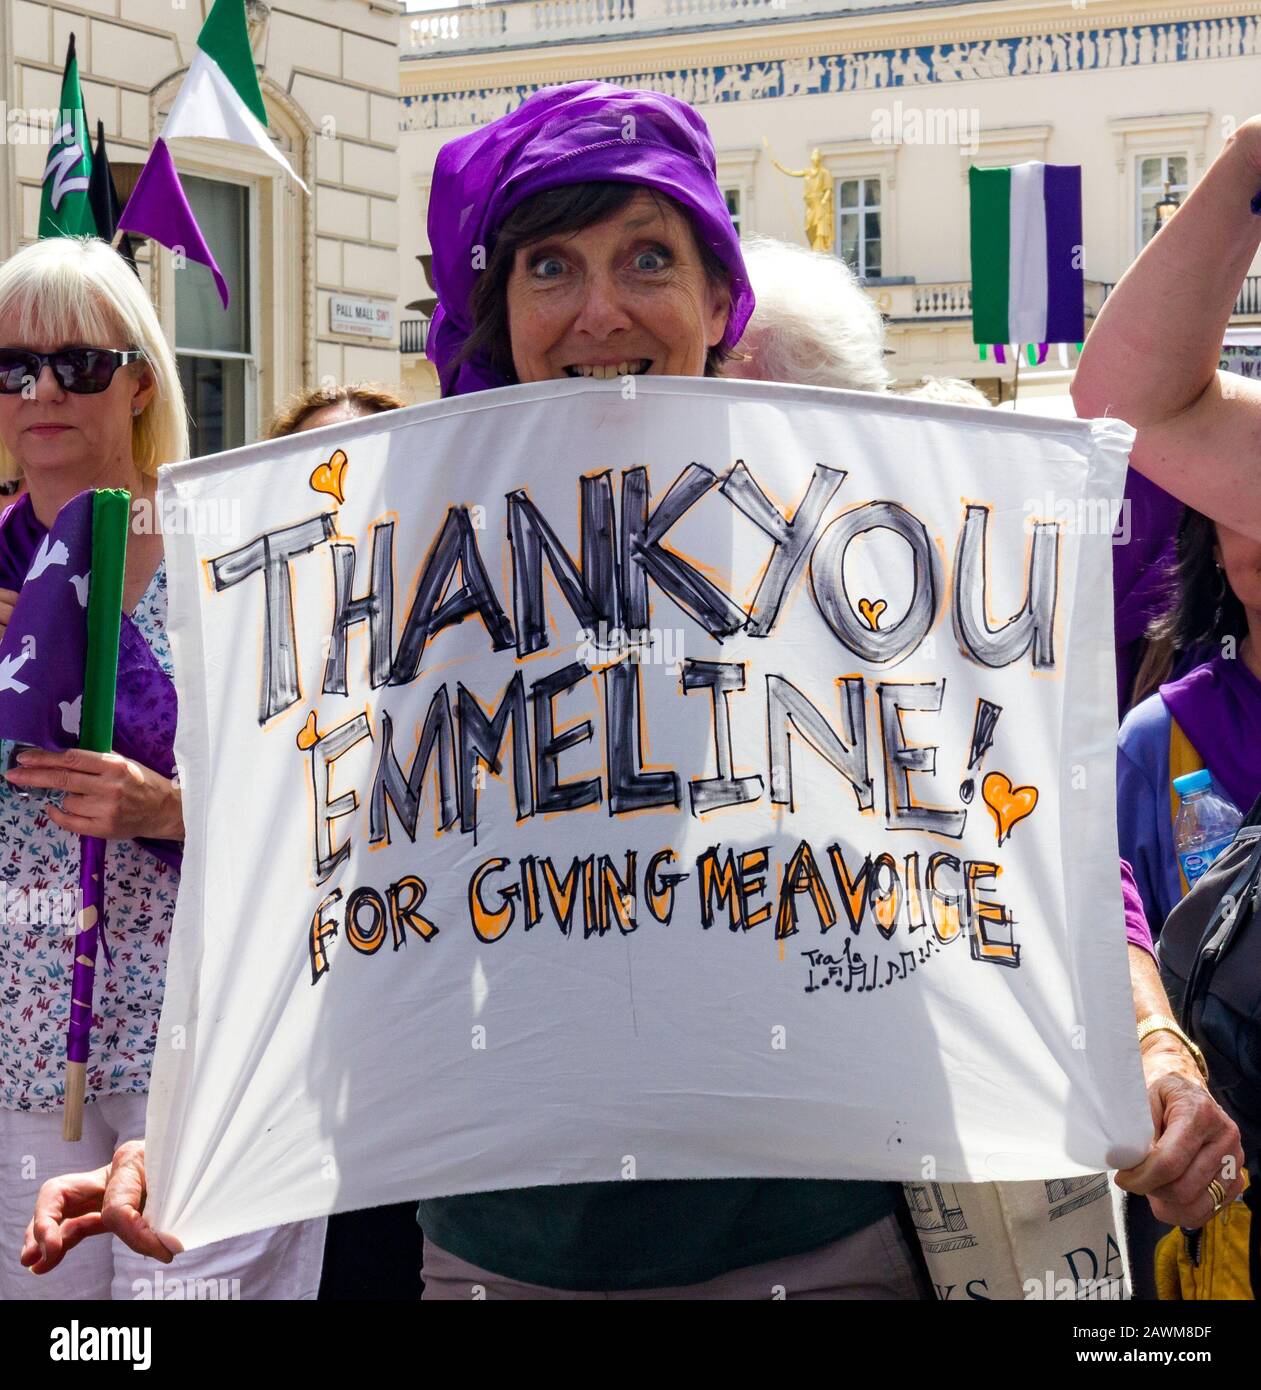 La messa di marzo segna 100 anni di voti delle donne, Central London, UK 10 giugno 2018. Insieme donne provenienti dal Regno Unito hanno marciato le strade per creare un'opera d'arte vivente, producendo un mare di verde, bianco e viola - i colori del movimento delle suffragette. Foto Stock